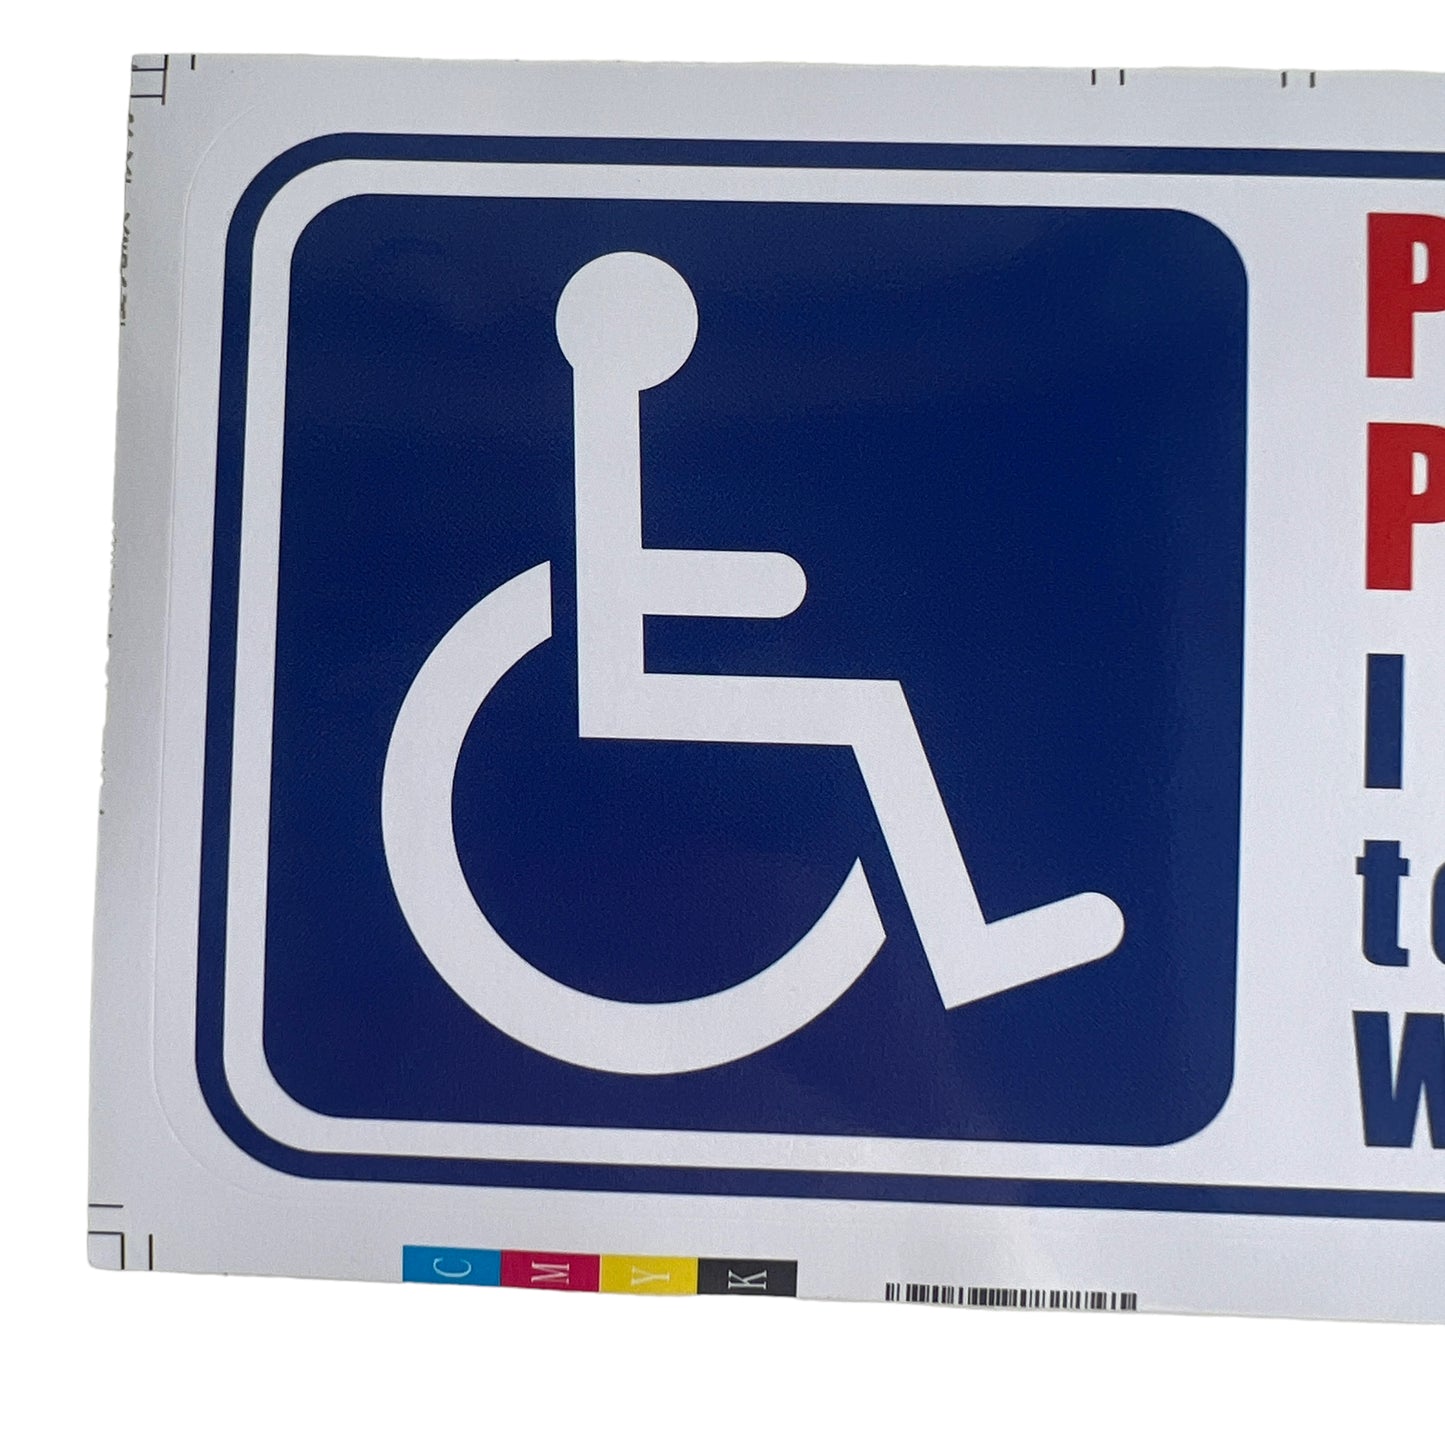 Sticker — Please do not park too close